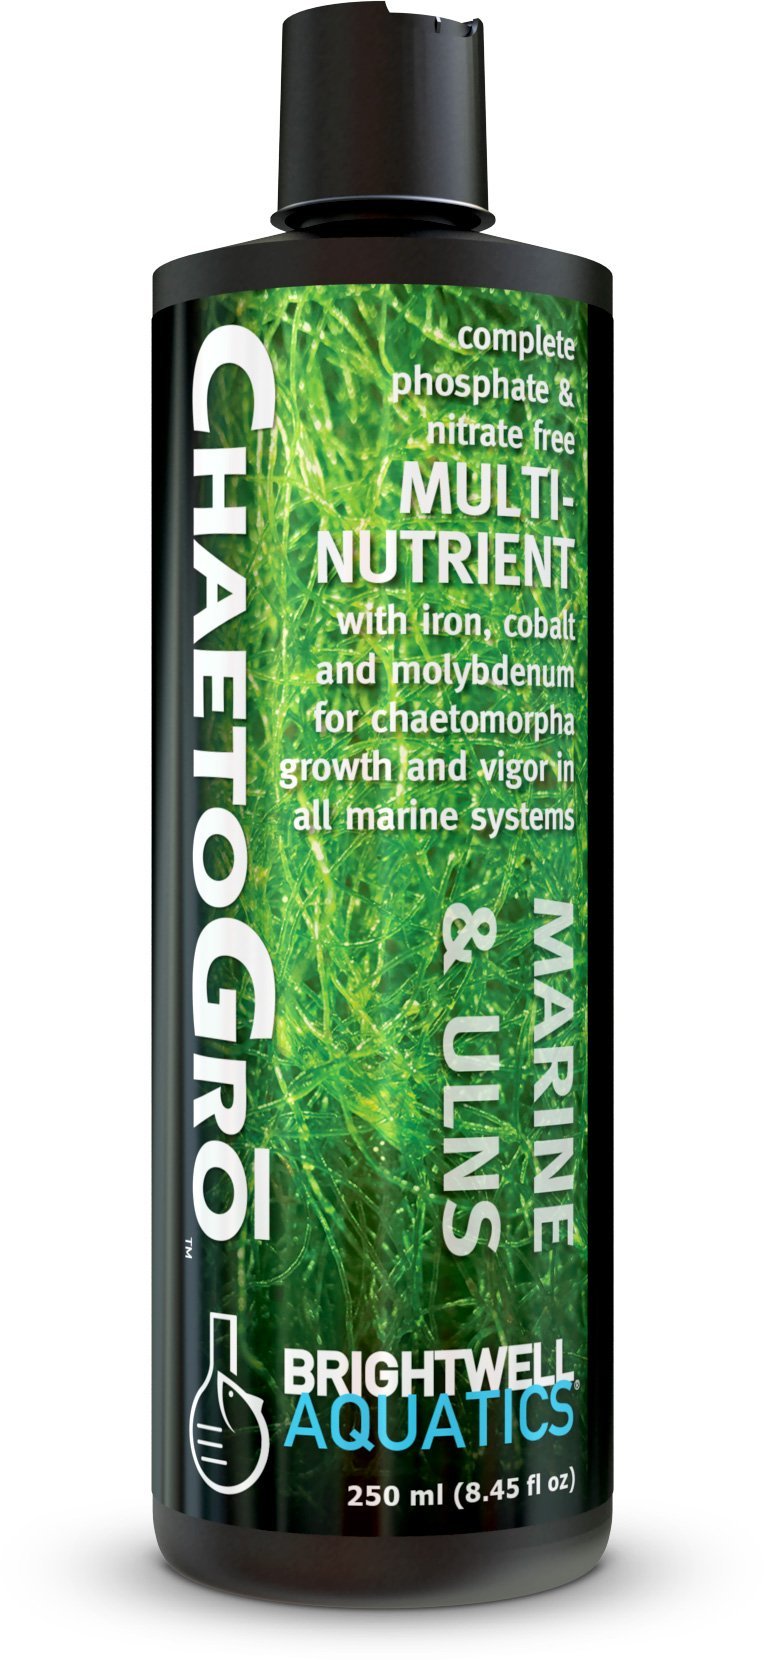 [AUSTRALIA] - Brightwell Aquatics Chaeto Gro - Multi-Nutrient Supplement for Chaetomorpha Algae Growth in Marine Aquarium Tanks 250-ML 